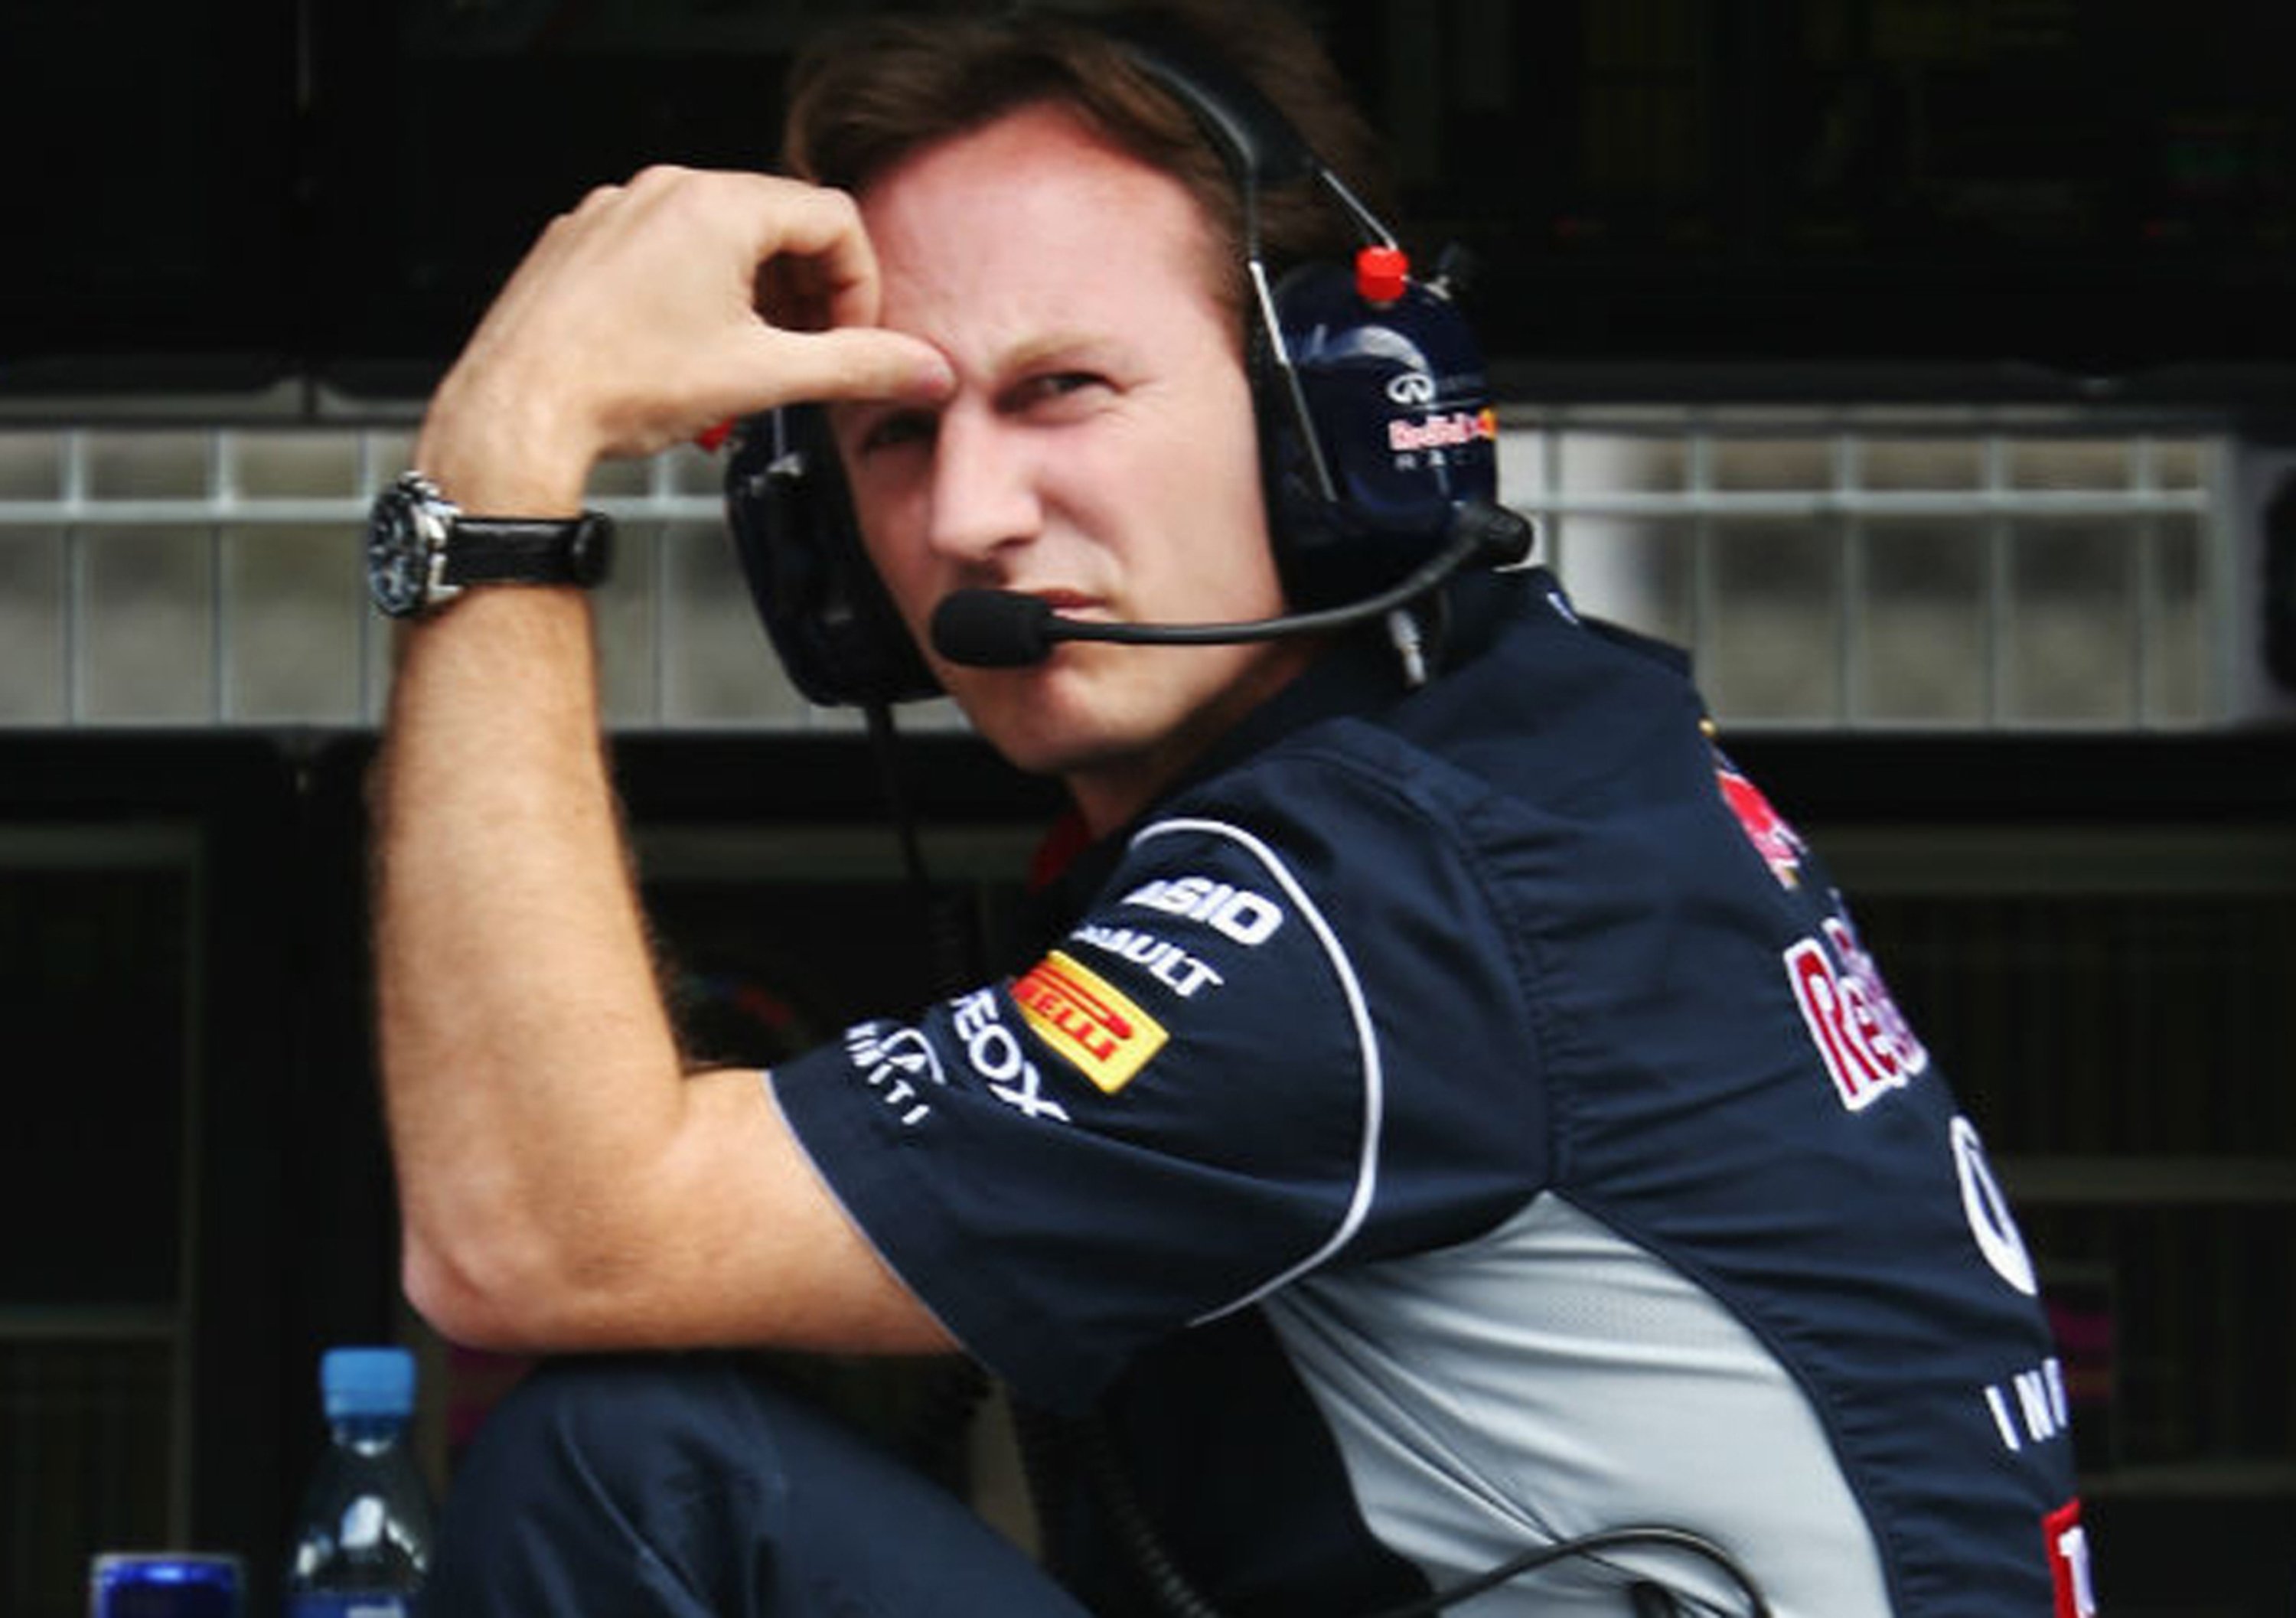 Chris Horner: &laquo;Vettel vuole vincere. Sempre&raquo;